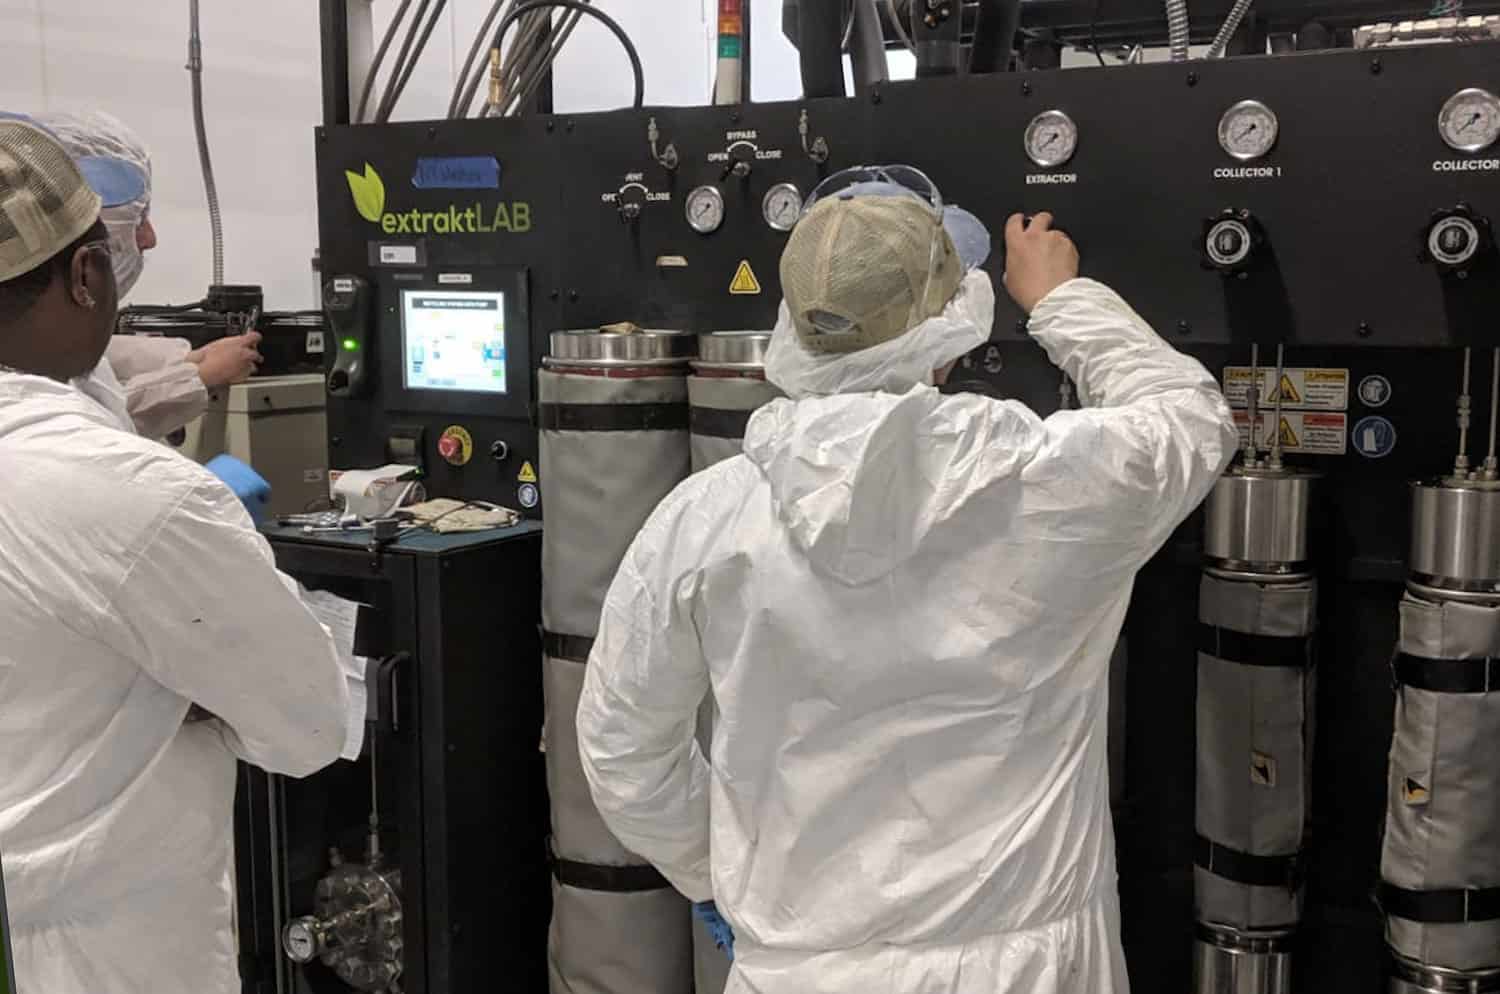 scientist in lab coat using extraktLAB machine